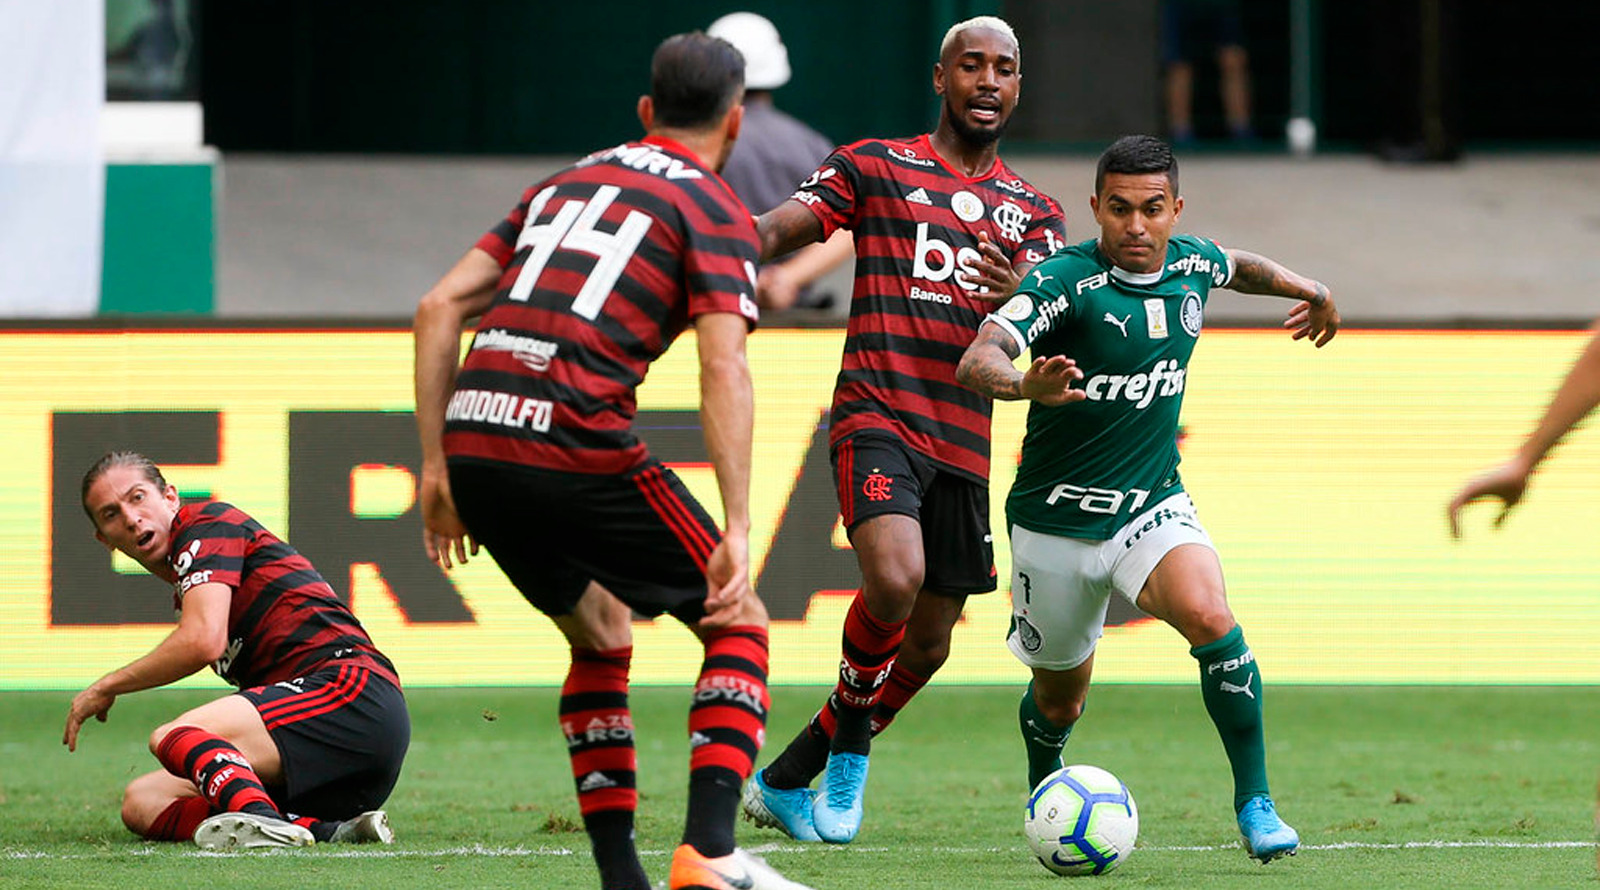 Palmeiras x Flamengo: CBF encaminha final da Supercopa em Brasília